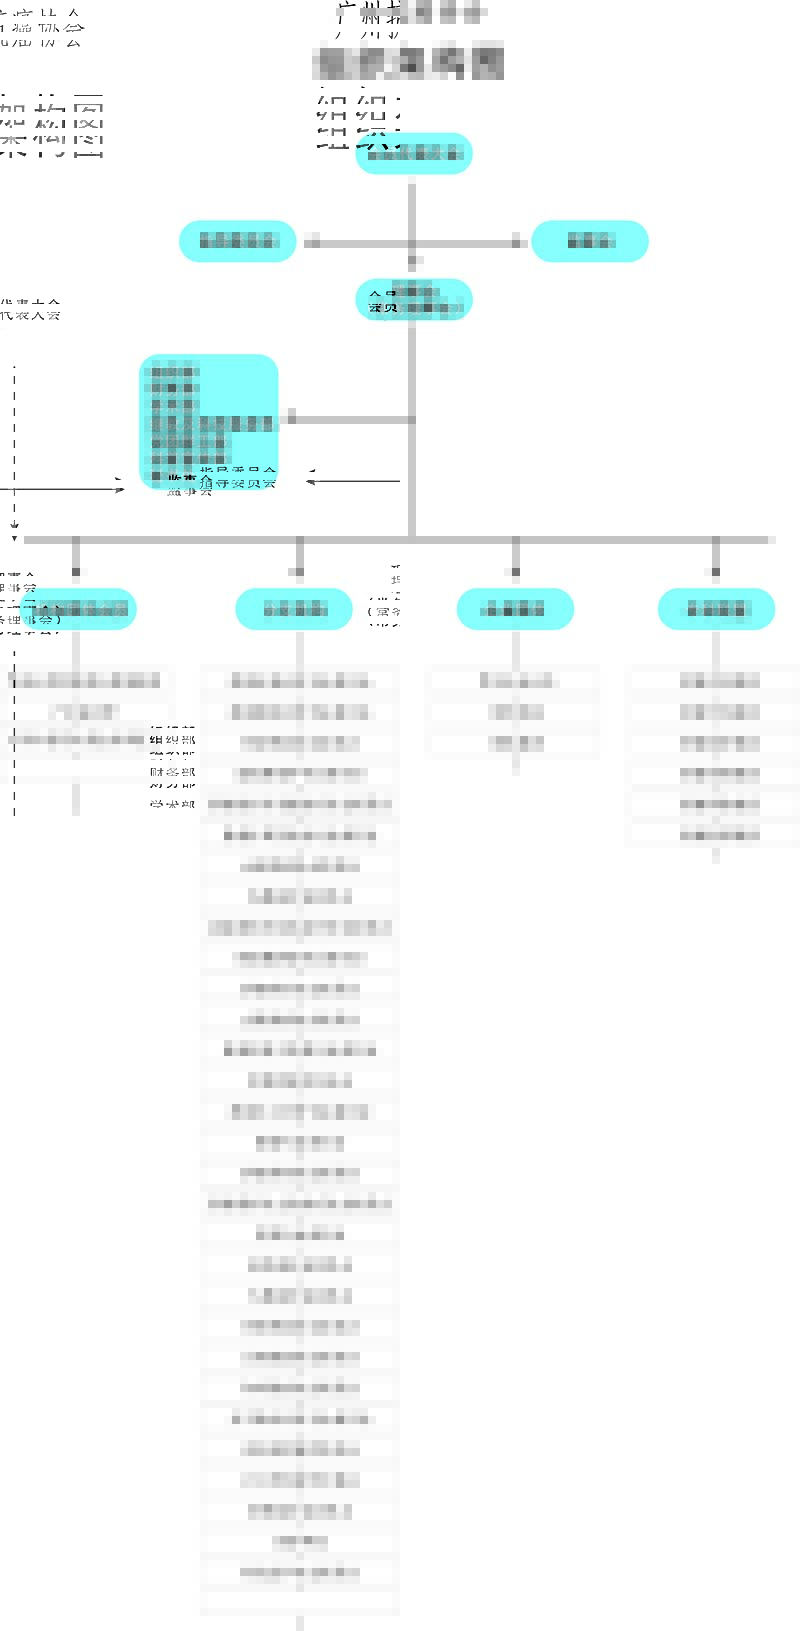 广州抗癌协会组织架构图22.jpg